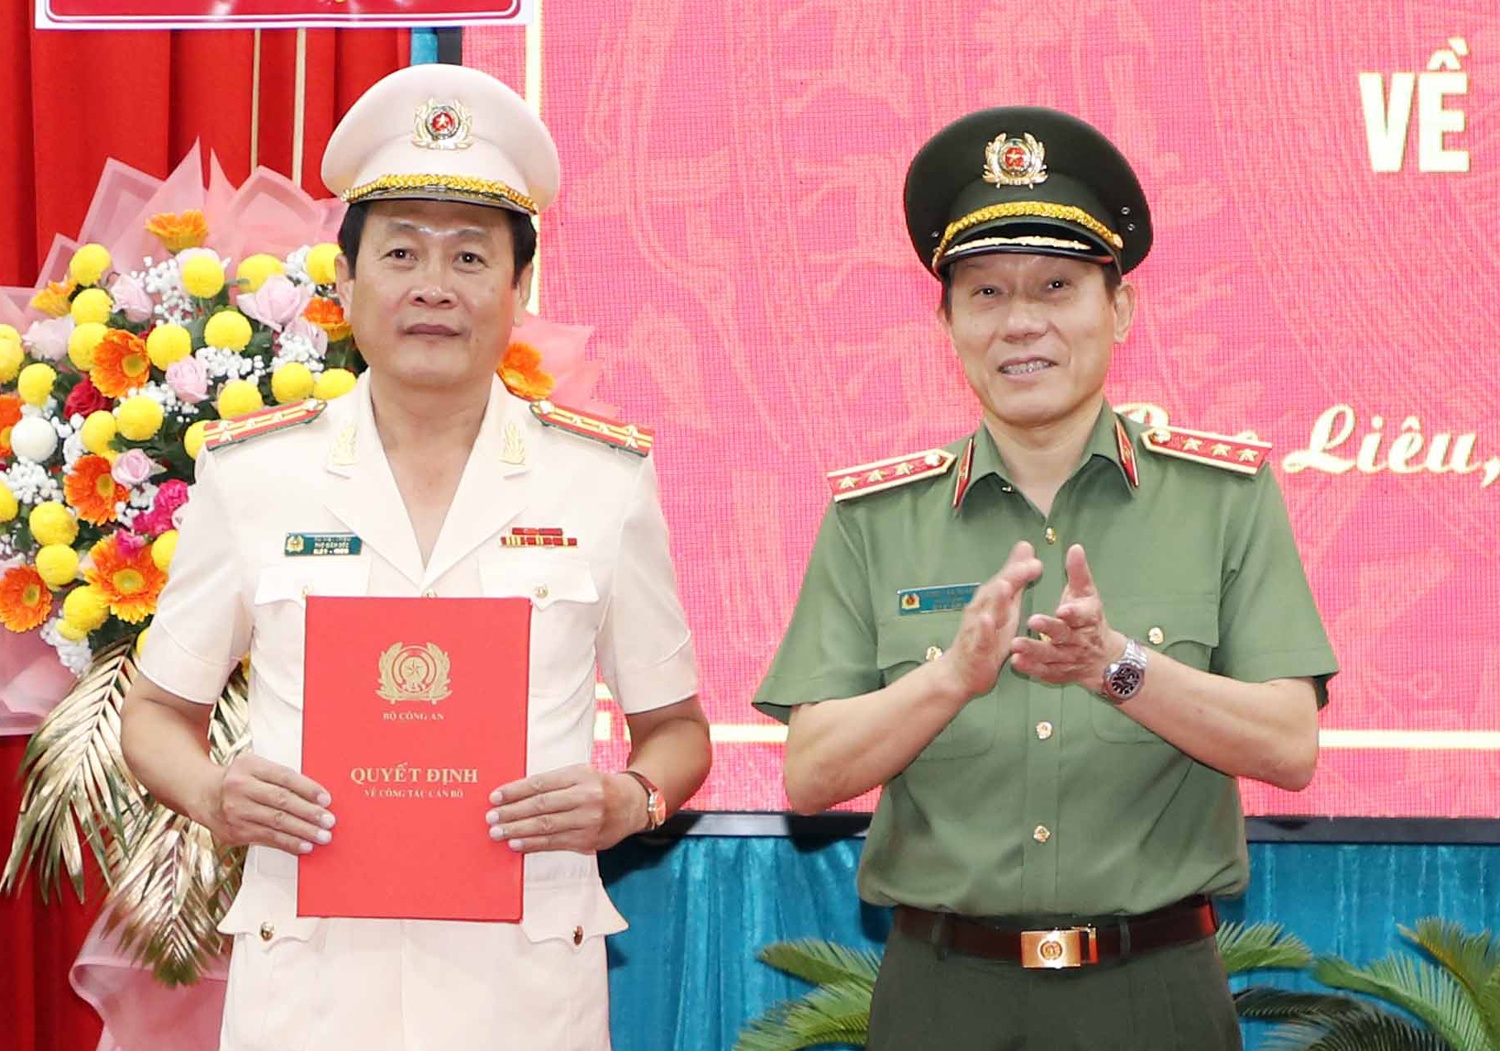 Thứ trưởng Bộ Công an Lương Tam Quang trao quyết định cho đại tá Hồ Việt Triều (trái). Ảnh: Zing.vn